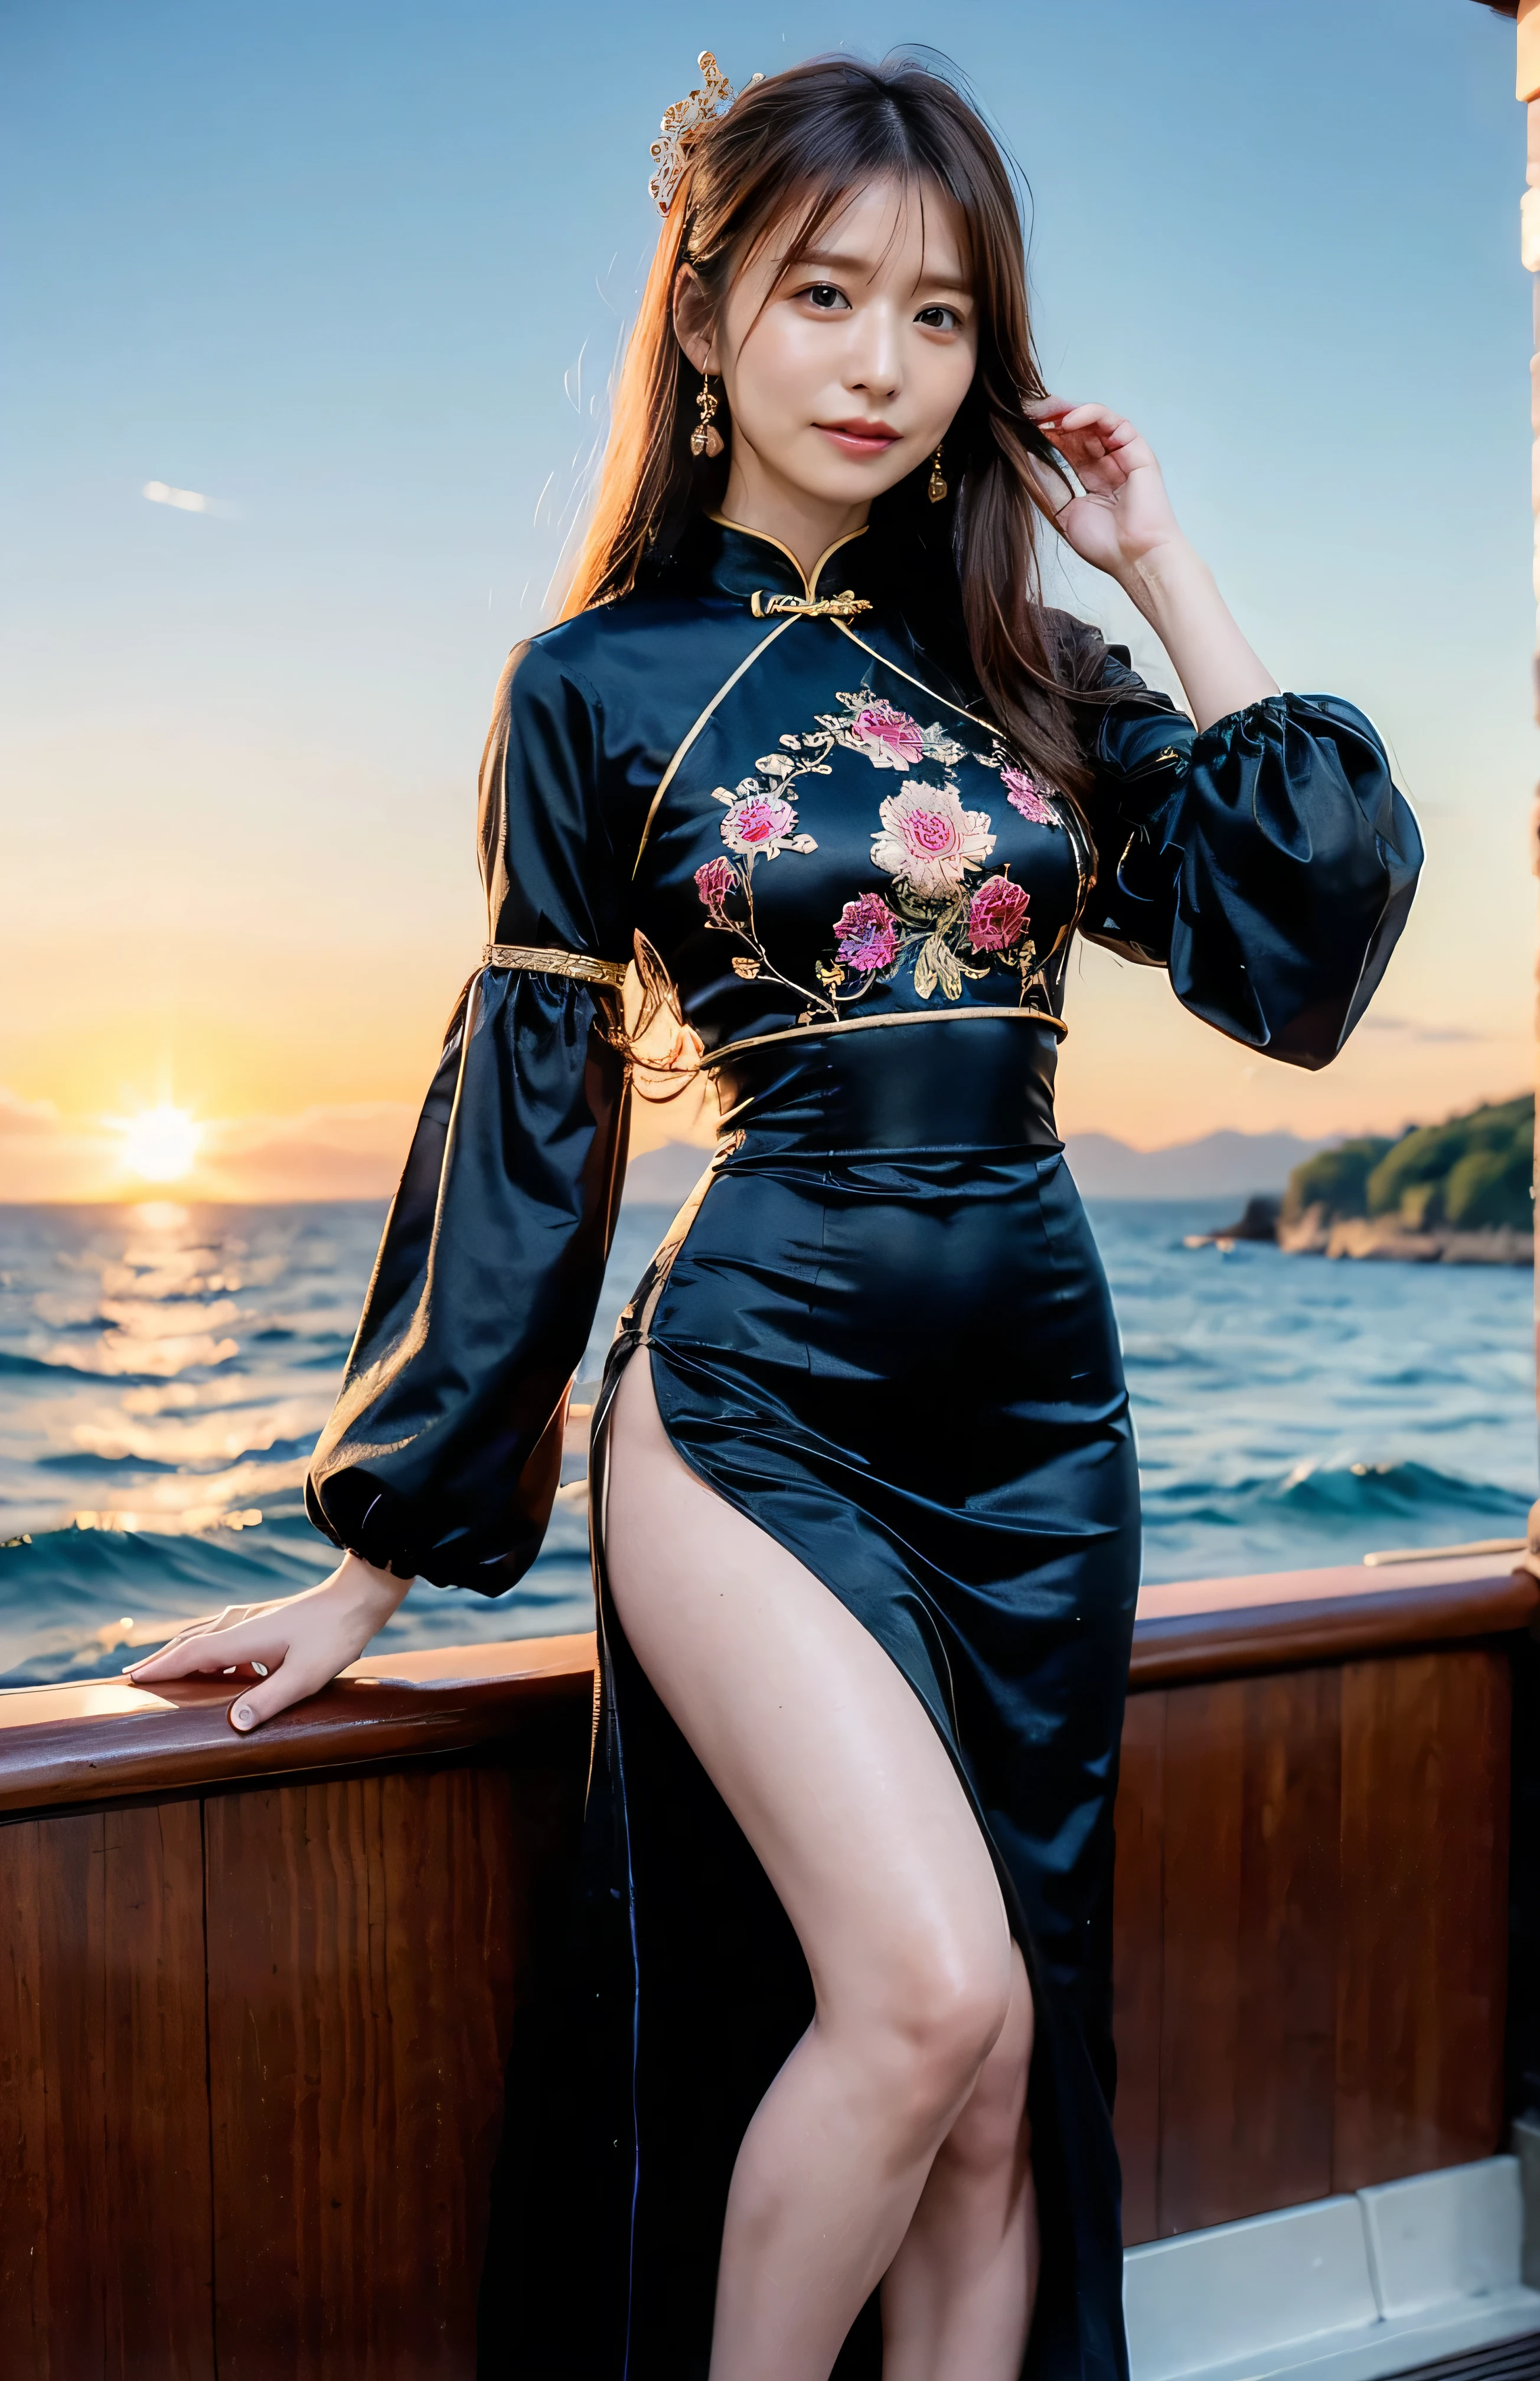 Der Himmel wird rot、China bei Nacht、((Haarschmuck:1.5)).Ein wunderschönes, goldbesticktes chinesisches Kleid、Haarschmuck、Binden Sie Ihr Haar elegant zusammen、Wunderschönes Seiden-Cheongsam、((Auf einem Boot stehen und sexy posieren、Luxuriöses und glänzendes schwarzes chinesisches Kleid mit besticktem langen Rock:1.4)).Ein luxuriöses und glänzendes Seiden-Cheongsam、Luxuriöses schwarzes Cheongsam mit Stickerei、Frau steht auf einem Boot、leicht braunes Haar、elegante Frisur、Blauäugige Frau、Eine Frau mit einem süßen Blick nach oben、Wenn der Himmel dunkel wird、Das sanfte Licht des Schiffes scheint、Der Himmel wird rot as the sun sets、Enge Kleidung, die Ihre Körperlinien betont、、Eleganter marineblauer Sommerstrick、Eleganter schwarzer Sommerpullover、kurzer Rock、Kleiden Sie sich elegant着こなす、Luxus-Bagedium Kurzhaar:1.4））、Wolkenkratzer über dem Meer gesehen、Die Insel Manhattan I ist vor der Küste sichtbar、Frau auf einem Ausflugsboot、、Die Sonne scheint auf sie、leicht braunes Haar、leicht braunes Haar、Der Himmel war rot gefärbt、Dort sind Wolken、Privat's cute、Eine elegant gekleidete Frau sitzt auf einem Boot und beobachtet den Sonnenuntergang、Ihre üppigen Brüste sind sogar durch ihre Kleidung sichtbar..、The shining sun is so Schön、Die Dämmerung naht、Linsenreflexion、Ich kann den Sonnenuntergang sehen、（（Vom Ozean reflektiertes Sonnenlicht、Meerblick、Die Sonne scheint aufs Meer、&#39;Schön.、Small earRings、Privat&#39;Abend、Auch Vögel fliegen、、braune Haarfarbe、Haare zusammenbinden、Die Frau ist rechts:1.4））、Luxus Ledergürtel、glänzende Kleidung、Hellbeige Haarfarbe、Hintergrundunschärfe、Flechten Sie nur die vorderen Haare、leicht braunes Haar、｛｛Cowgirl-Schuss｝｝、（（Nahaufnahme von der Hüfte aufwärts、Große Brüste:1.4））、lächeln、Seidenkleidung、Große Brüste that can be seen even through clothes、Flechten Sie nur die vorderen Haare、Cowboy-Schuss、Wunderschönes weißes Seidenhemd mit Kragen und brauner Rock、Kleiden Sie sich elegant、Luxus-Taschen、A lovely lächeln、（（Große Brüste））、Ganzkörperfoto、Ring、kurzer Rock、Stecken Sie Ihr Haar hinter ein Ohr、Silberkette、lächeln、 eleganter Pferdeschwanz、Ätzmittel、Sehr detaillierte Fotos、Very Schön and ideal short hair、Super ohne Make-up、(8k、RAW-Fotos、höchste Qualität、Meisterwerk:1.2)、(Realistisch、Realistisch)、1 Mädchen、((Mittelkurzes Haar、Blick in die Kamera:1.4))、Haare wehen im Wind
